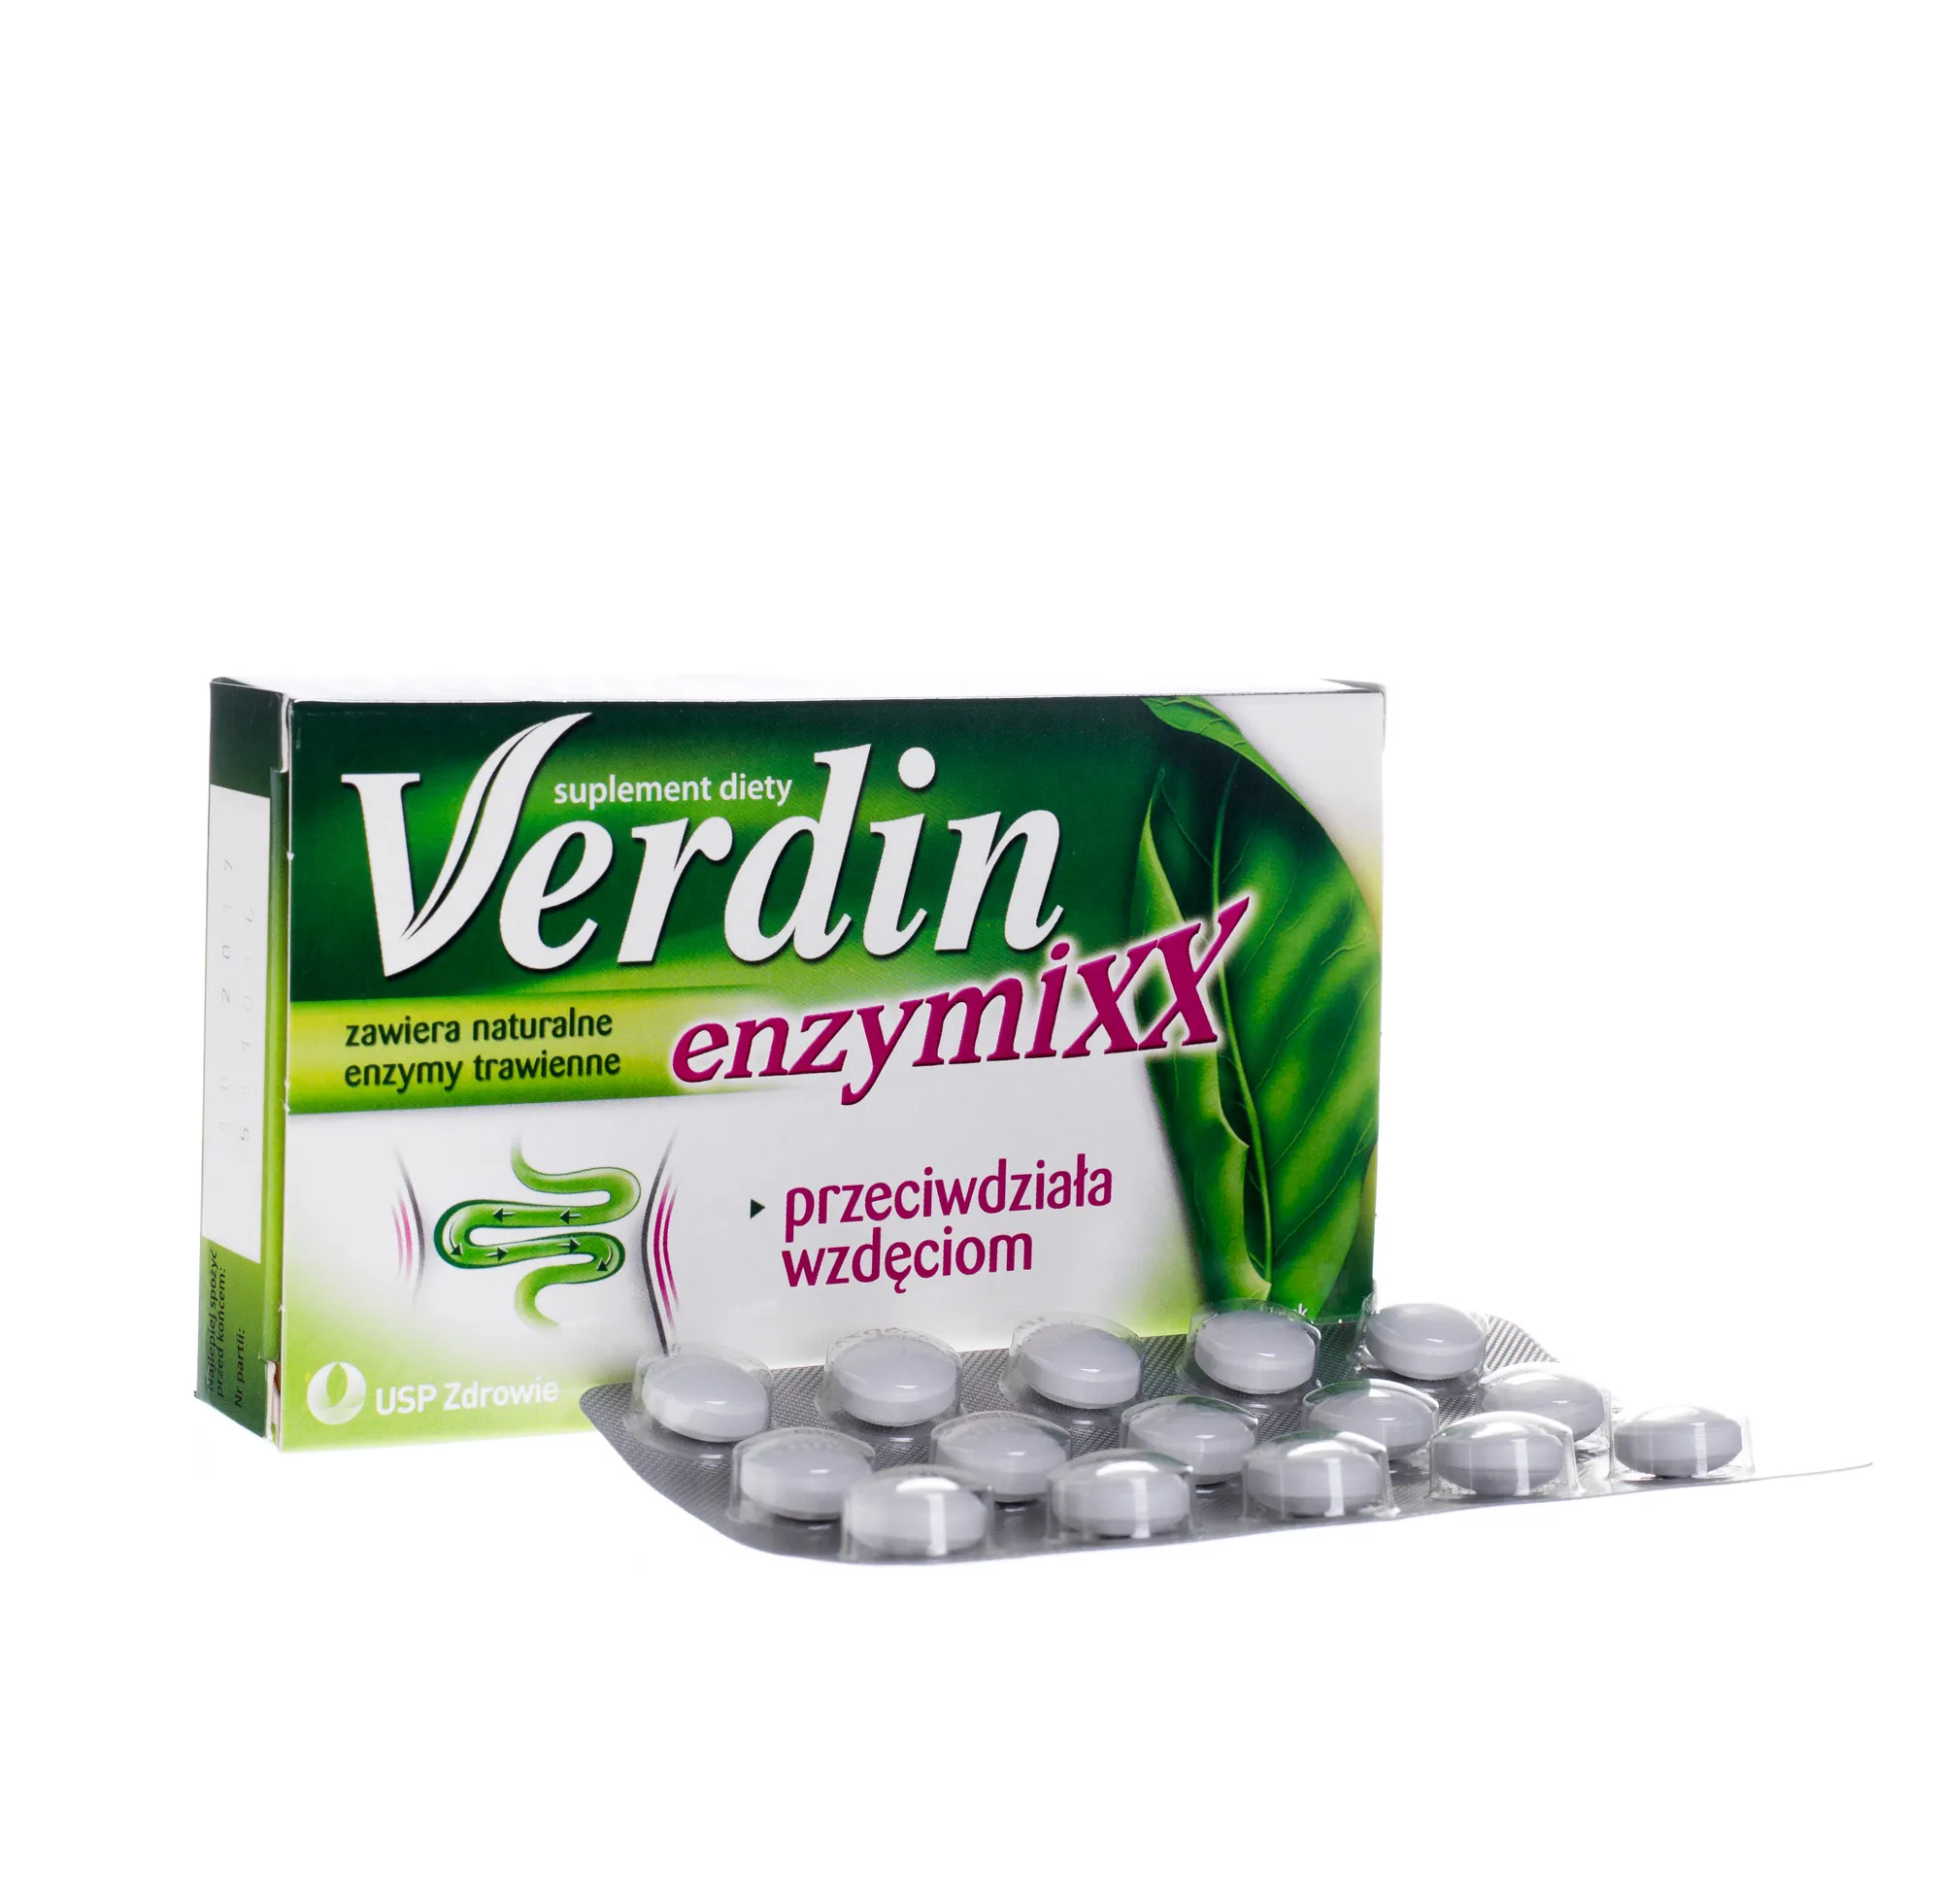 Verdin Enzymixx, przeciwdziała wzdęciom, 15 tabletek powlekanych 